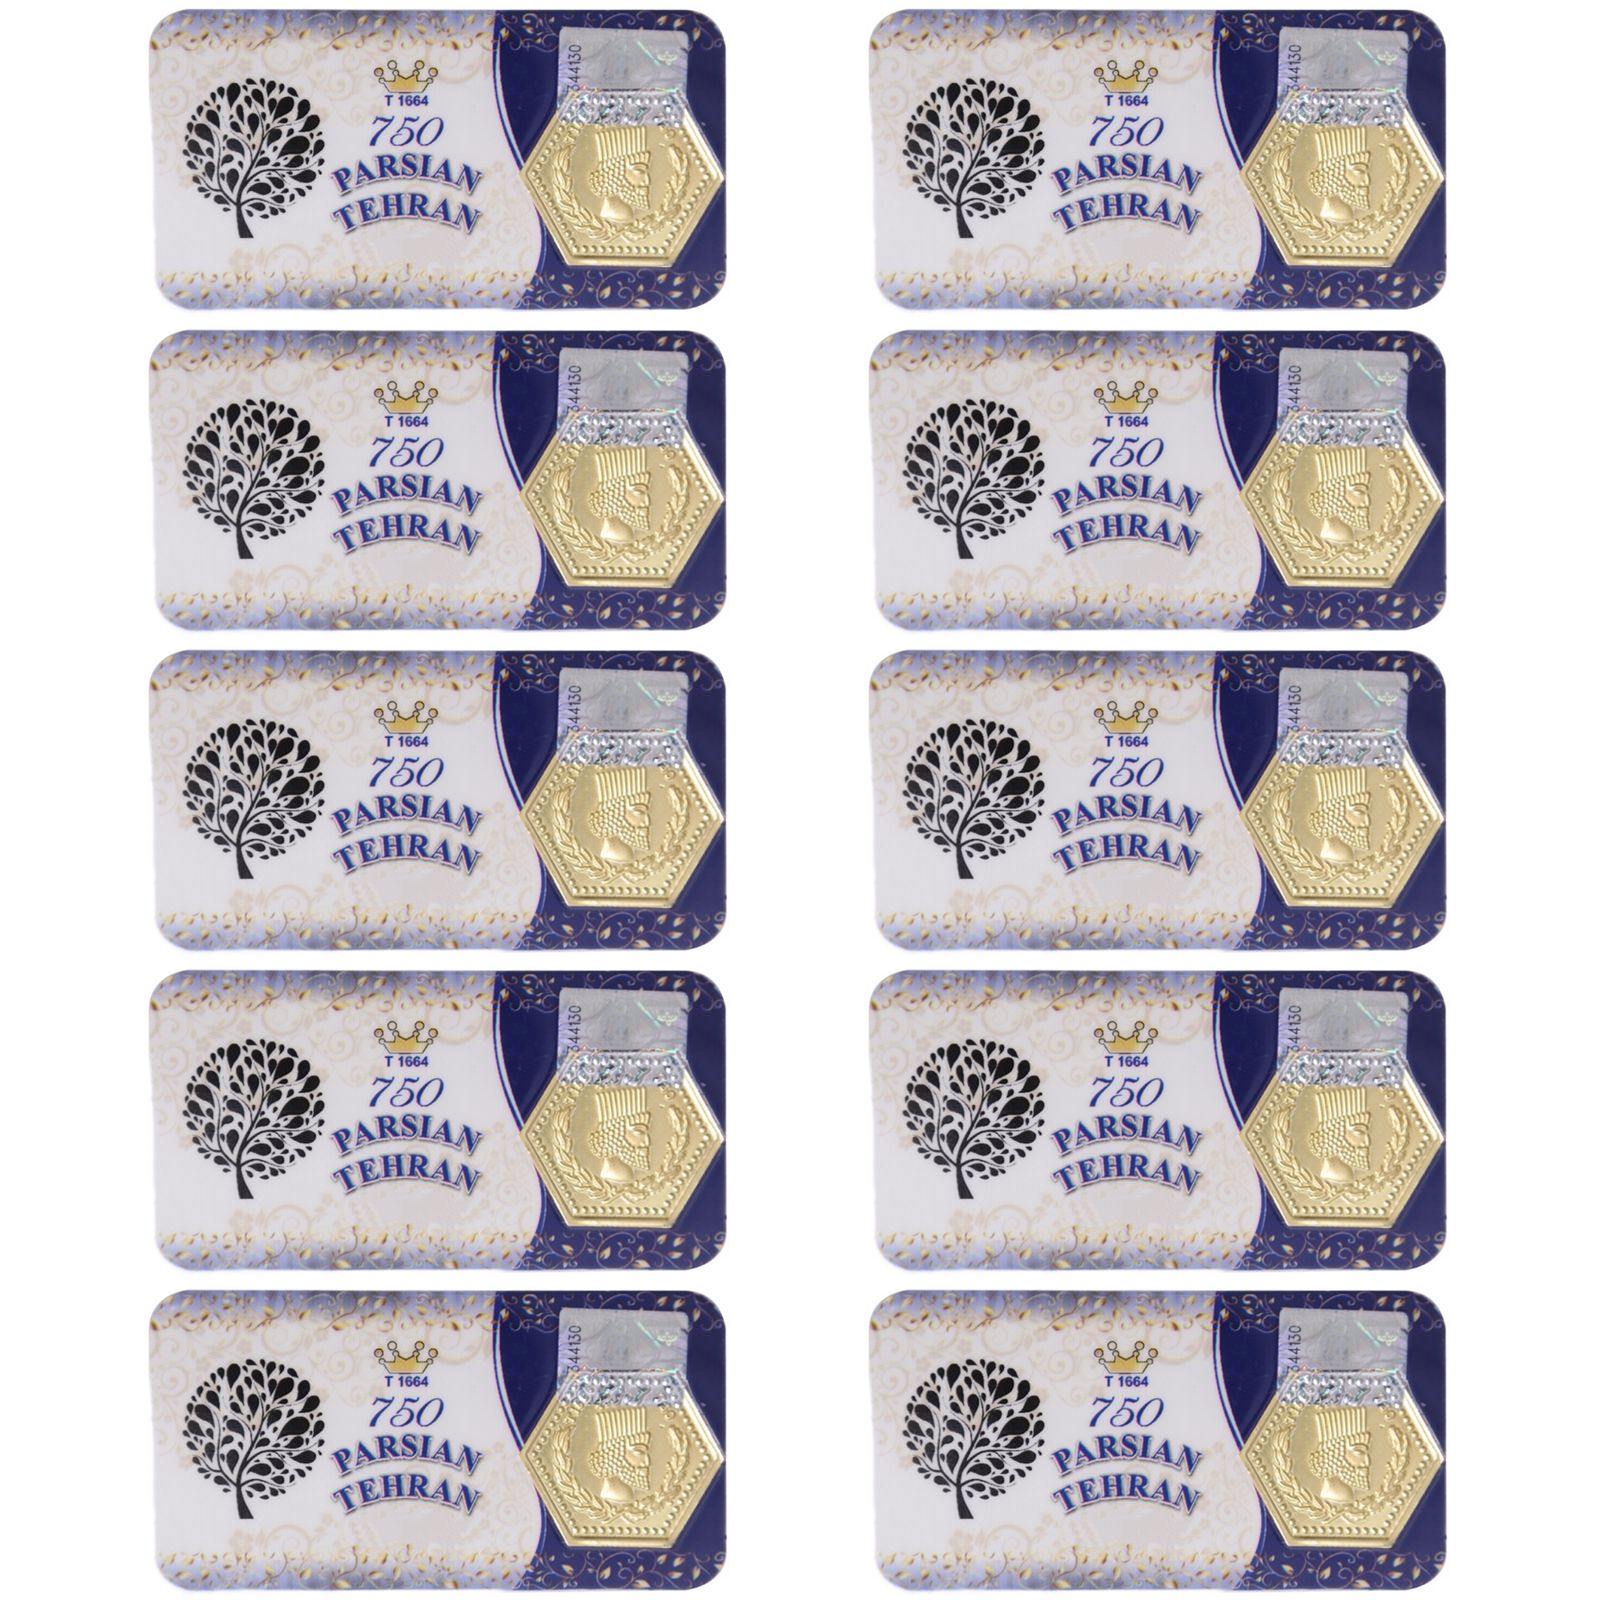 سکه گرمی طلا 18 عیار پارسیان تهران مدل K412 مجموعه 10 عددی -  - 2